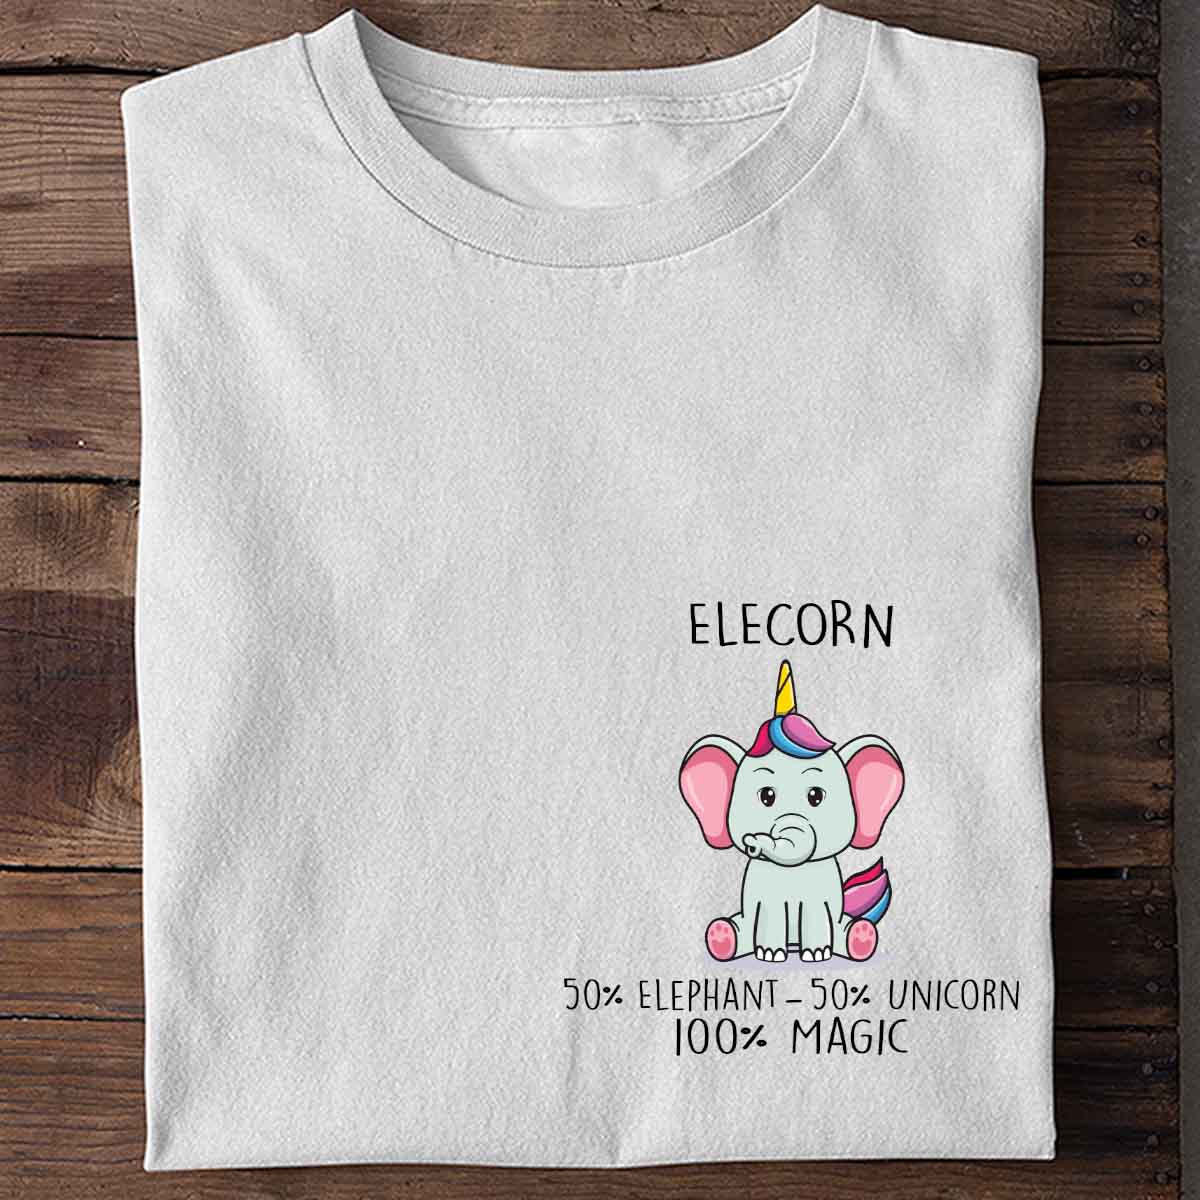 Elecorn Elephant - Shirt Unisex Chest